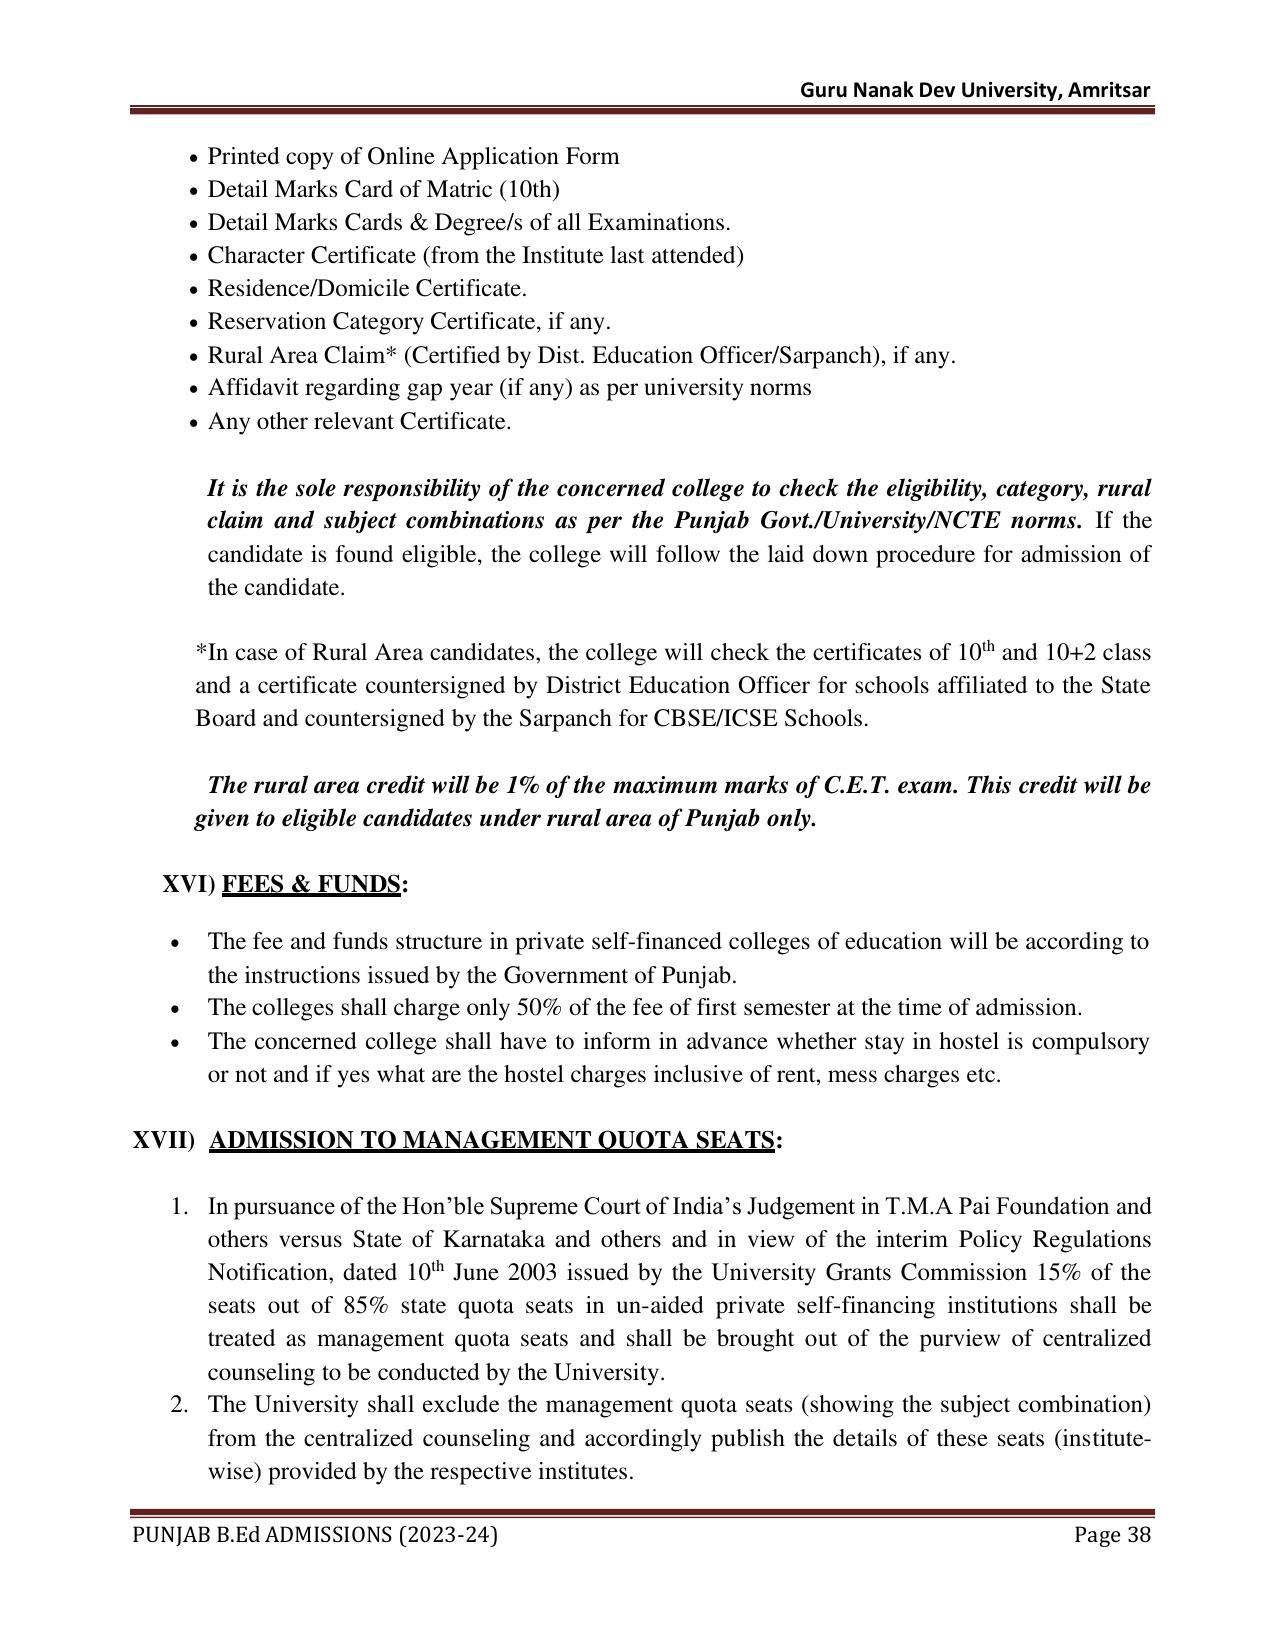 Punjab B.Ed CET 2023 - Page 38